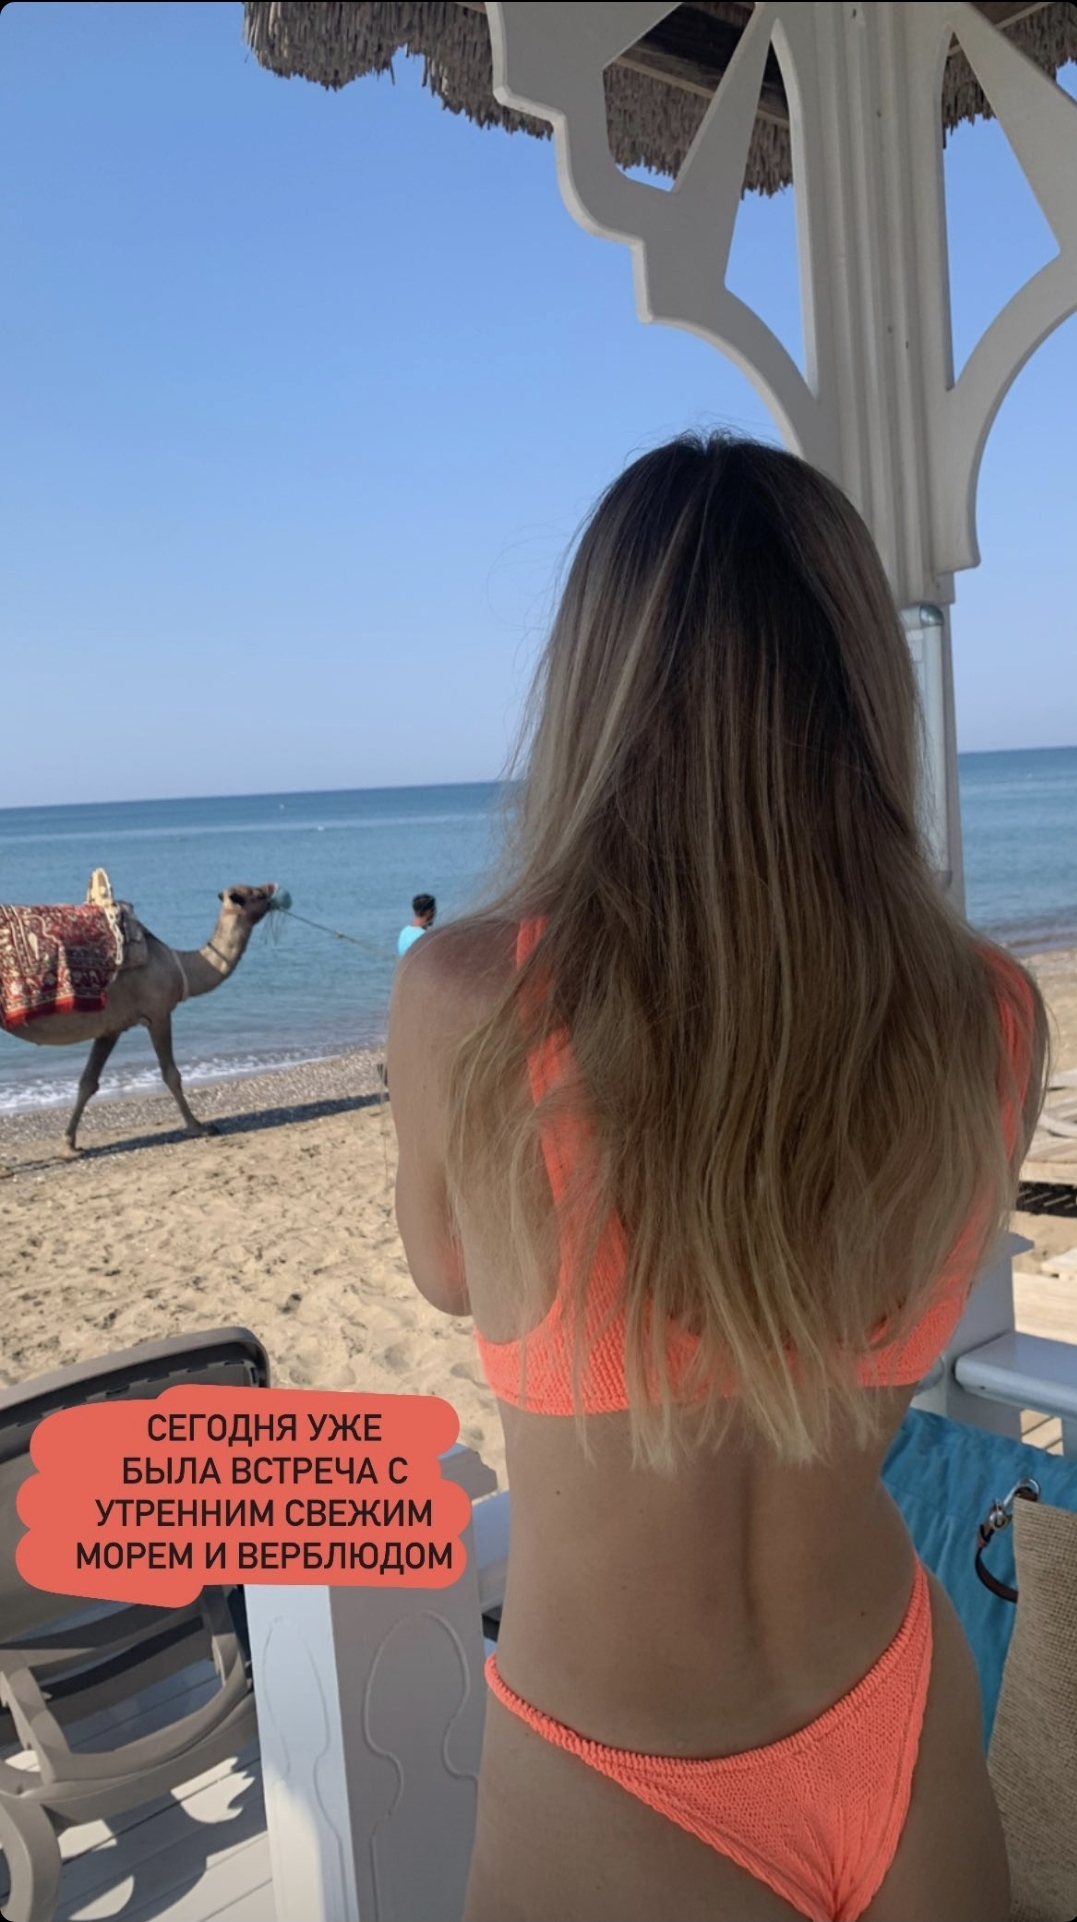 На отдыхе в Турции Вера Брежнева в купальнике сделала фото своей груди крупным планом